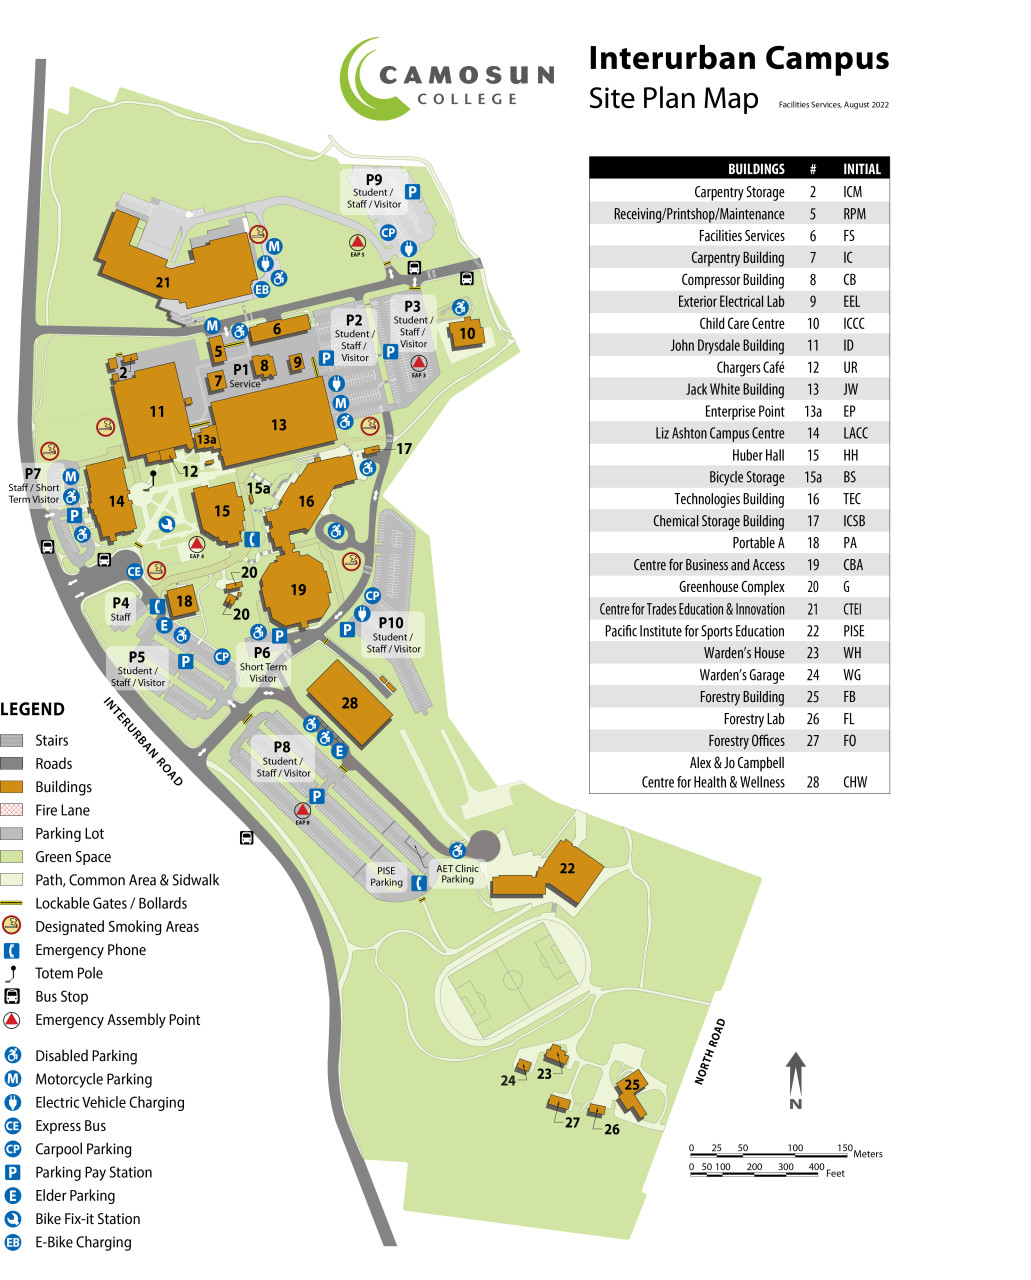 Interurban campus map